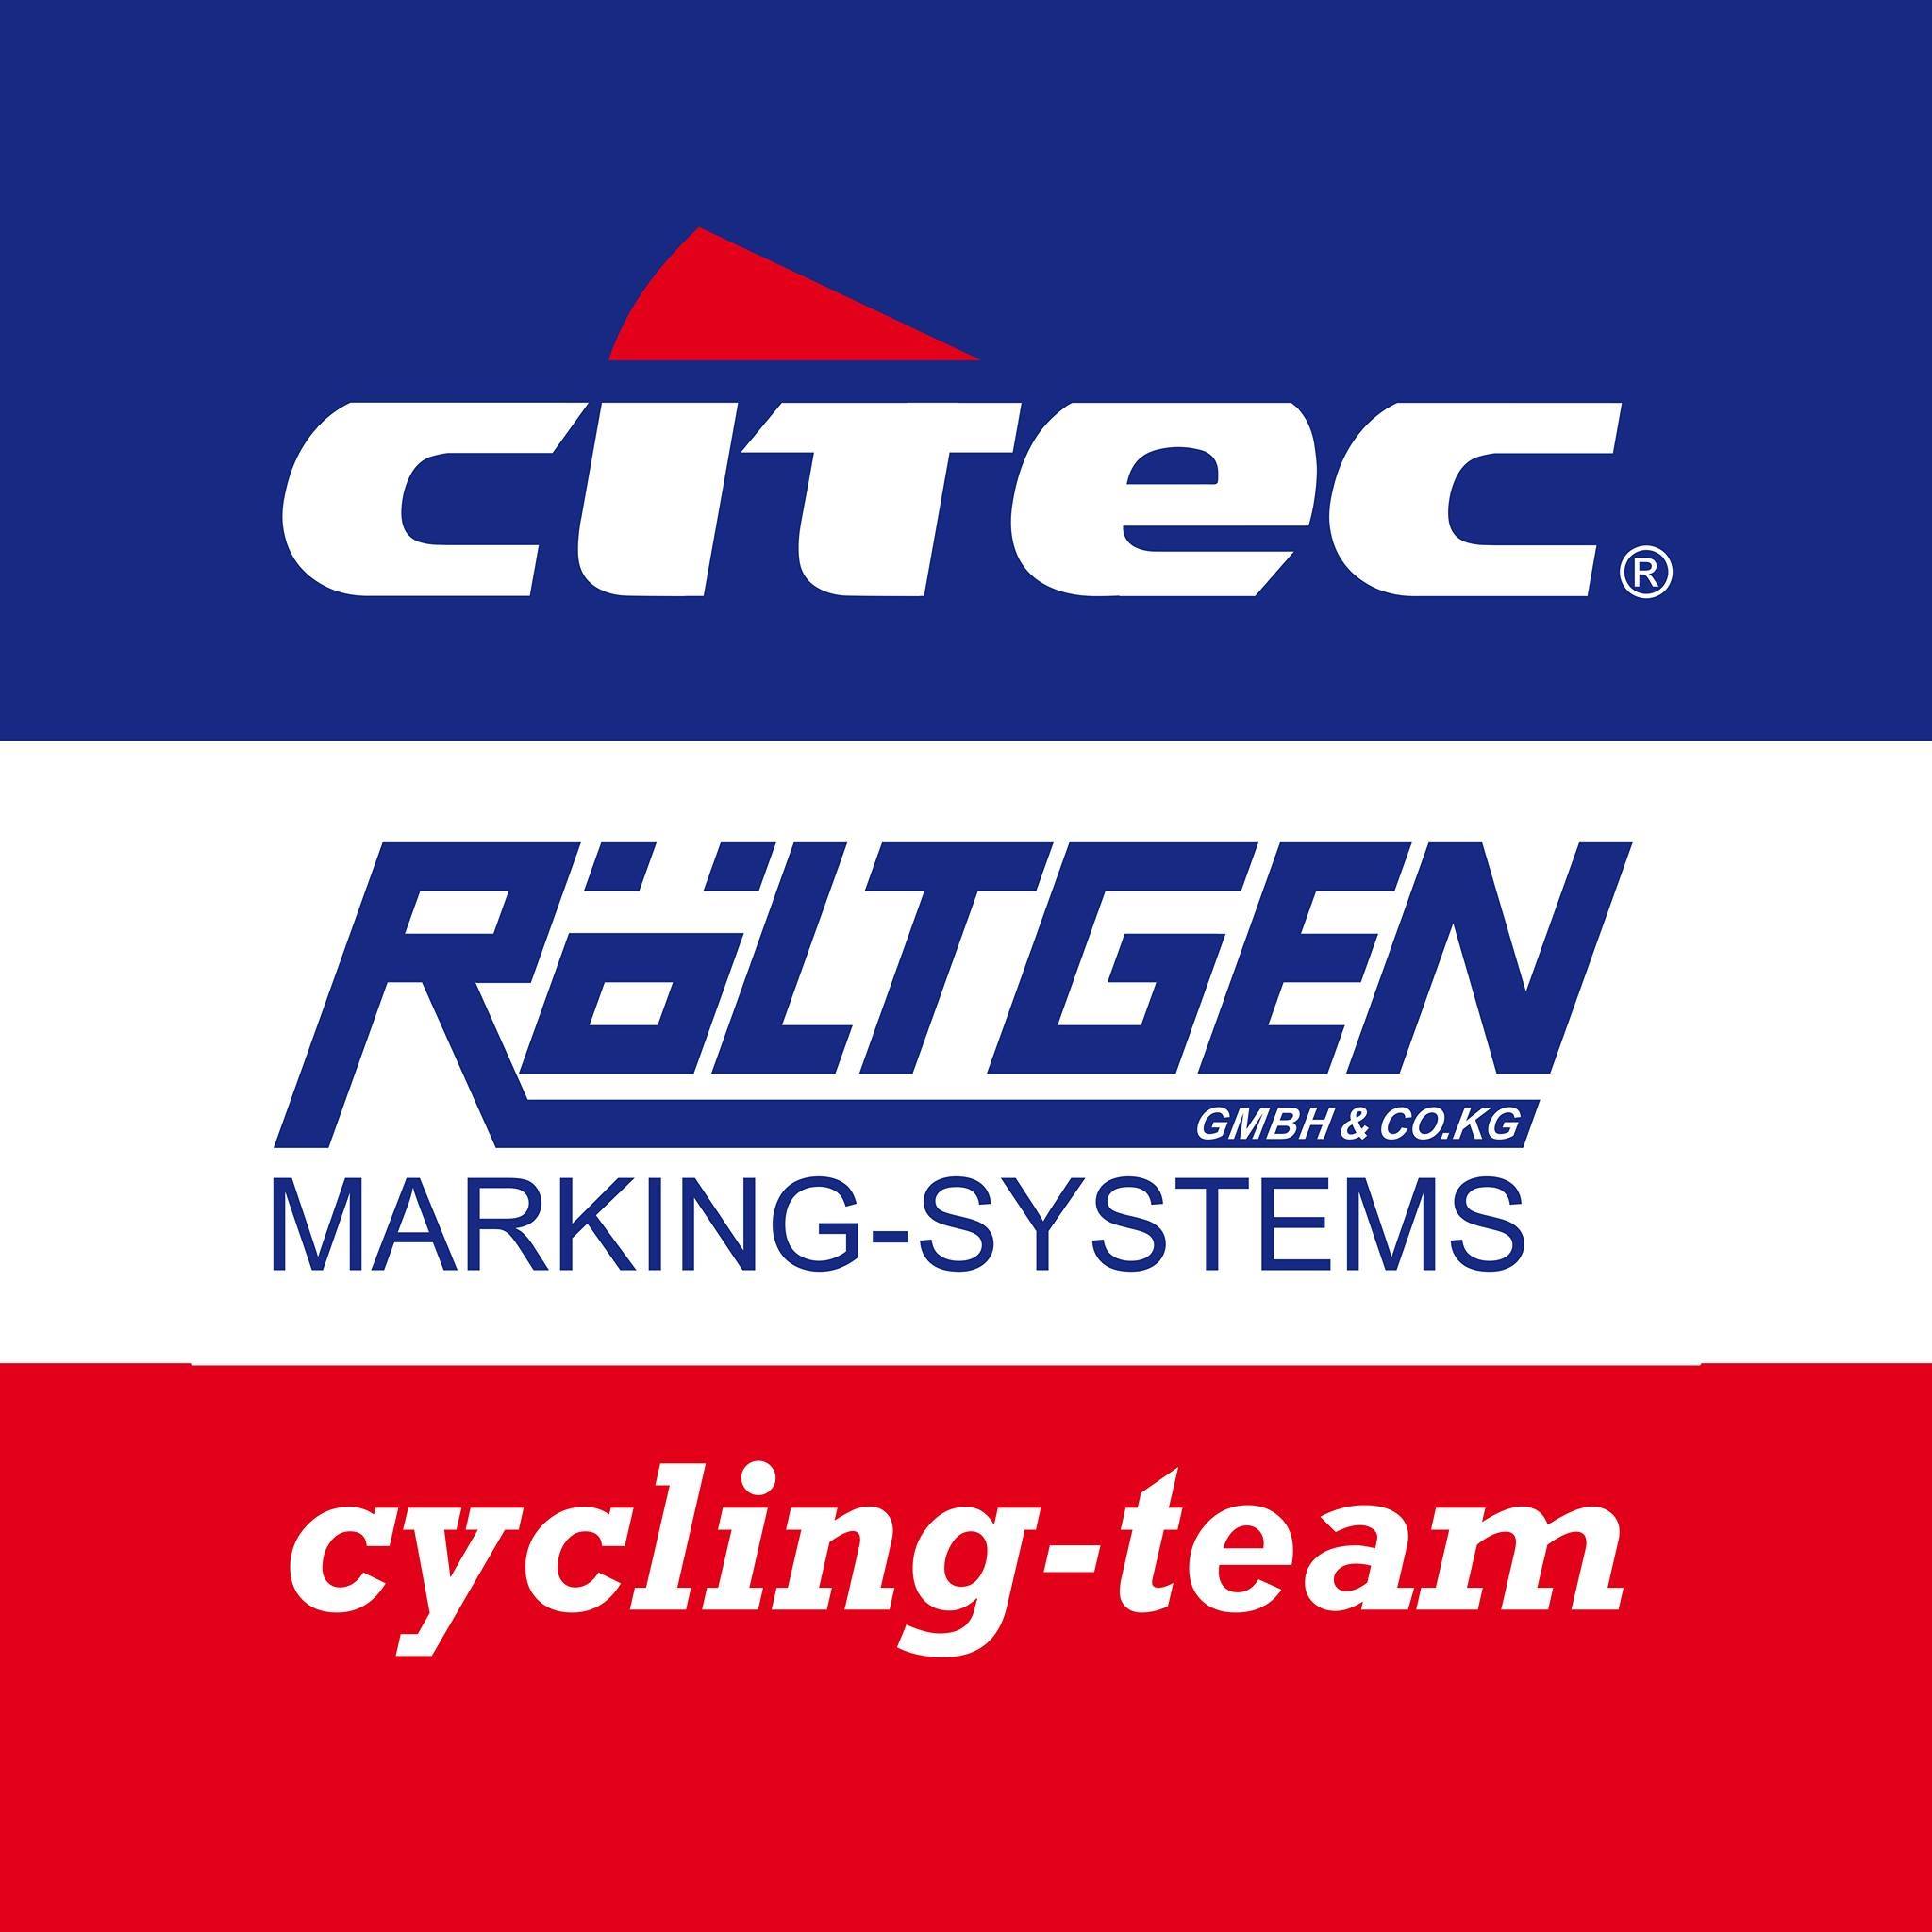 Citec-Röltgen-Cycling-Team